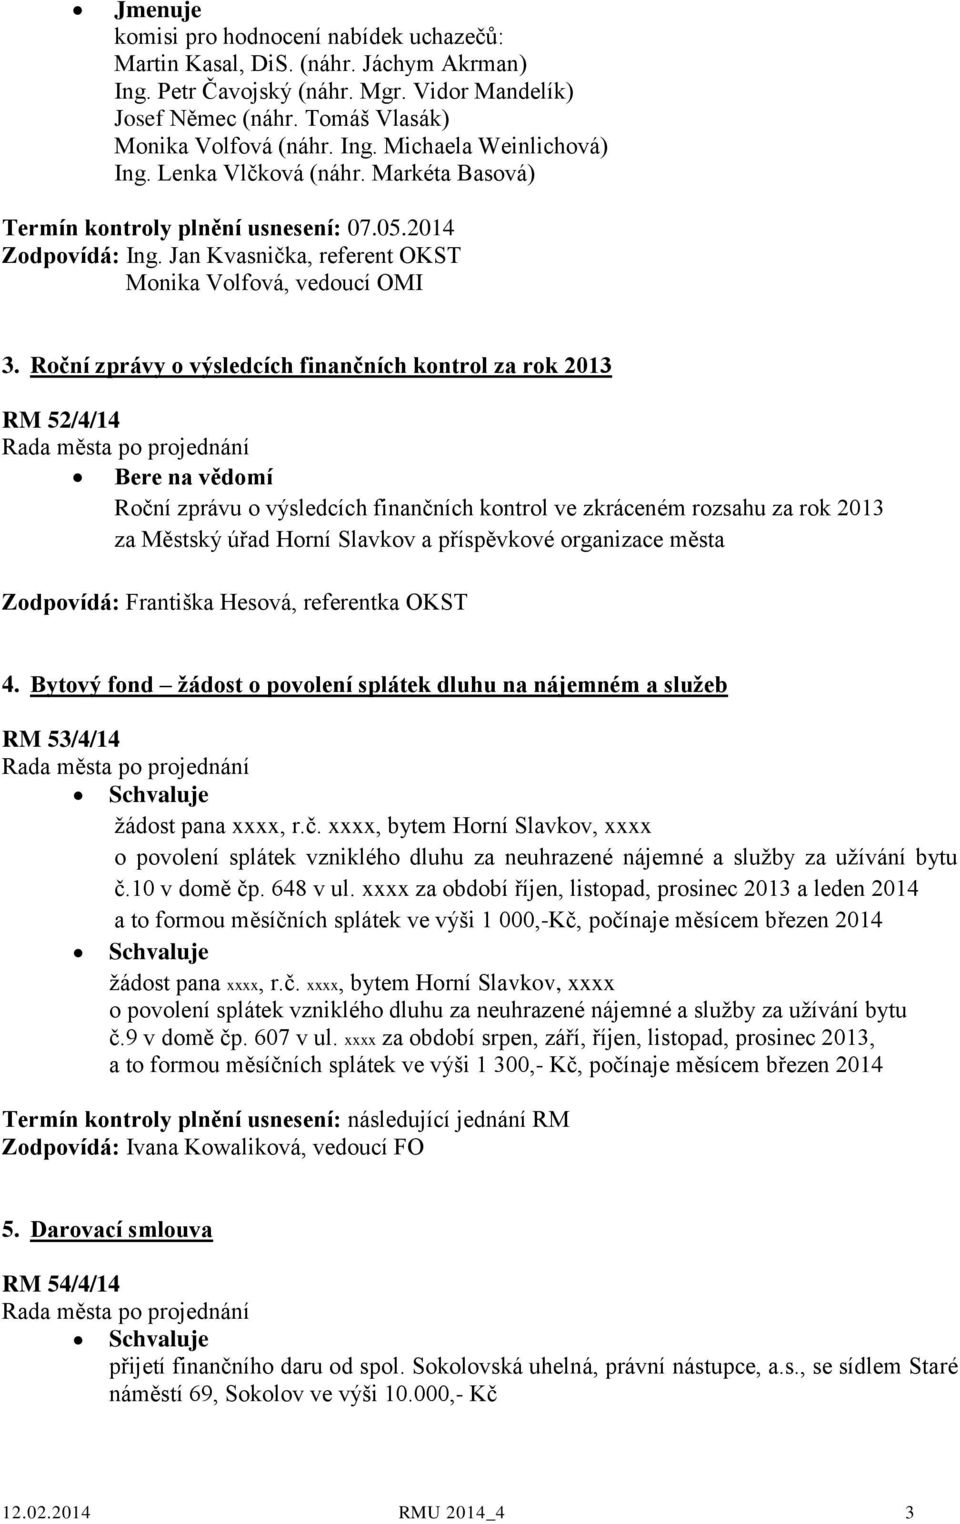 Roční zprávy o výsledcích finančních kontrol za rok 2013 RM 52/4/14 Roční zprávu o výsledcích finančních kontrol ve zkráceném rozsahu za rok 2013 za Městský úřad Horní Slavkov a příspěvkové